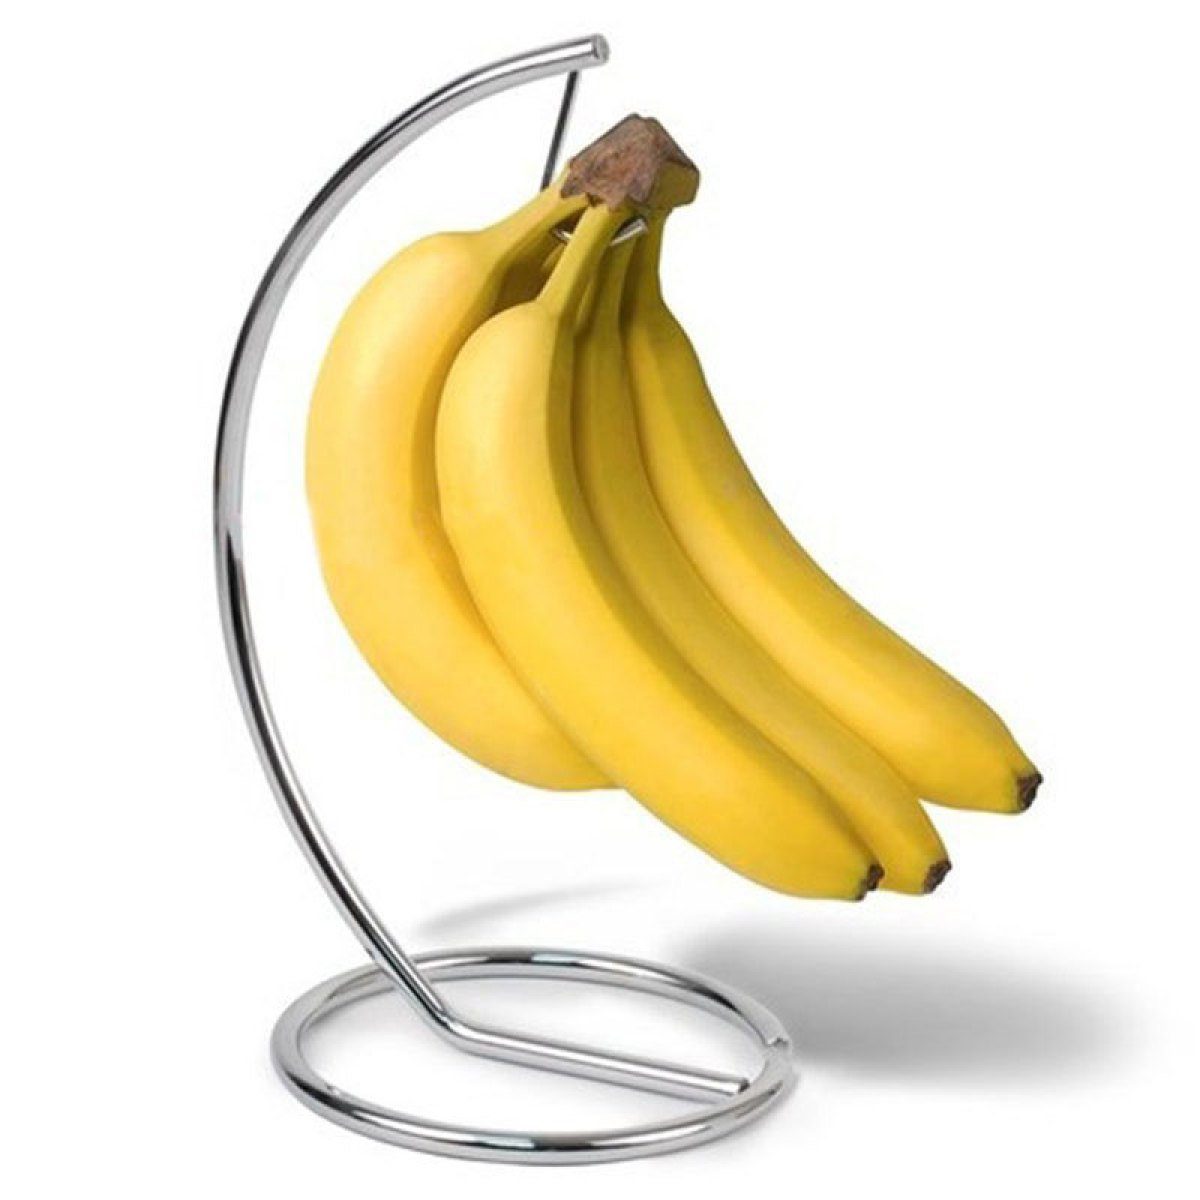 Silber mit Bananenhalter Bananen,Trauben, Speicher, Basis,Obst Jormftte Halter runder